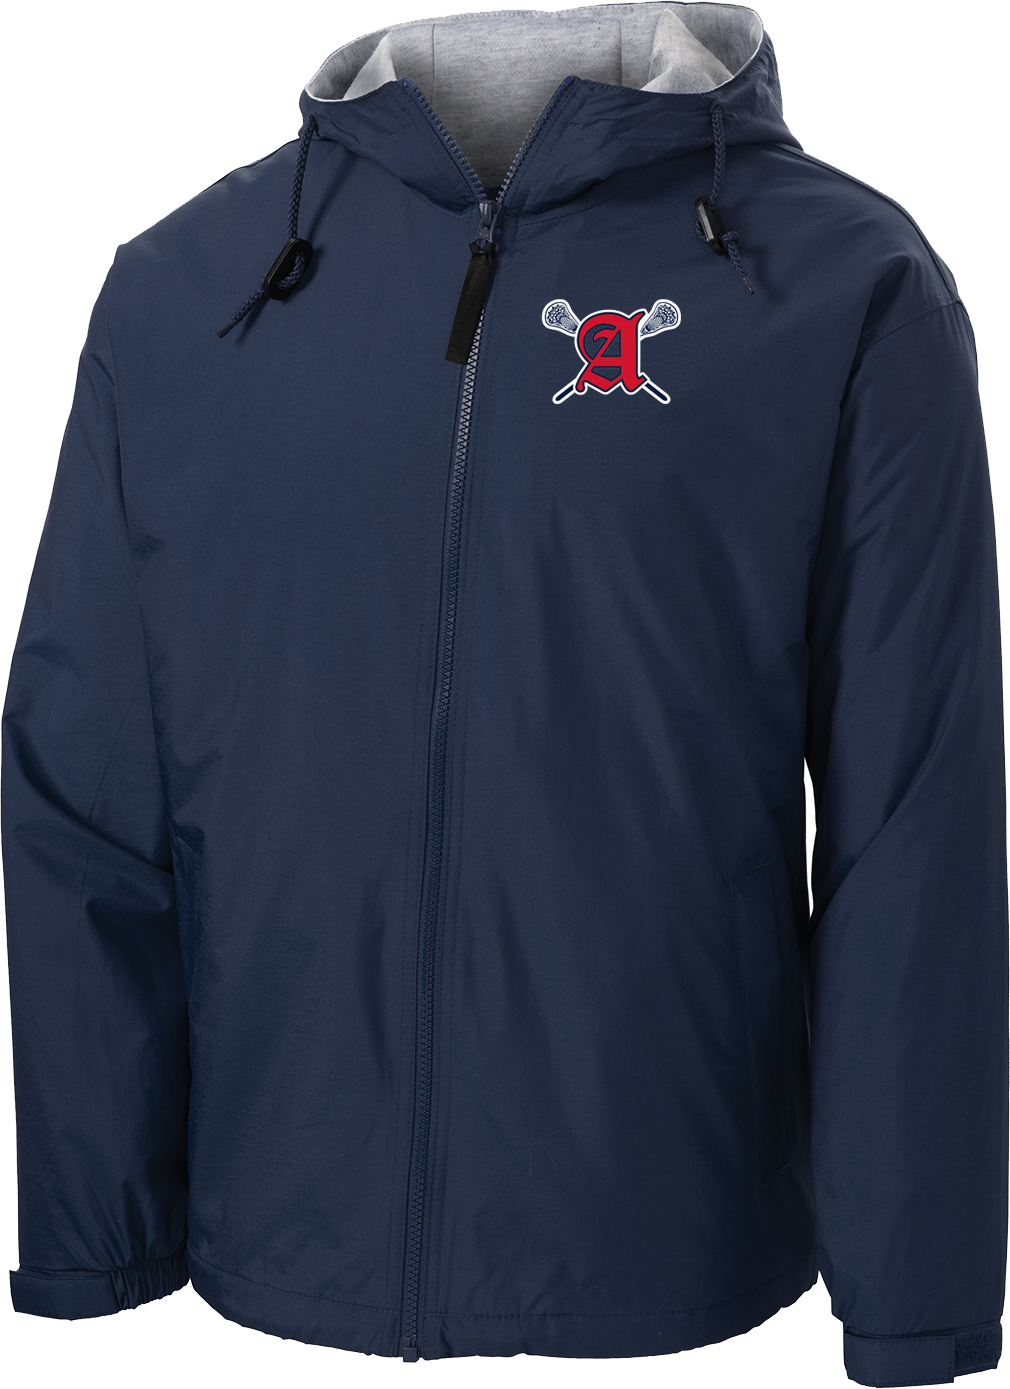 Augusta Patriots Navy Hooded Jacket